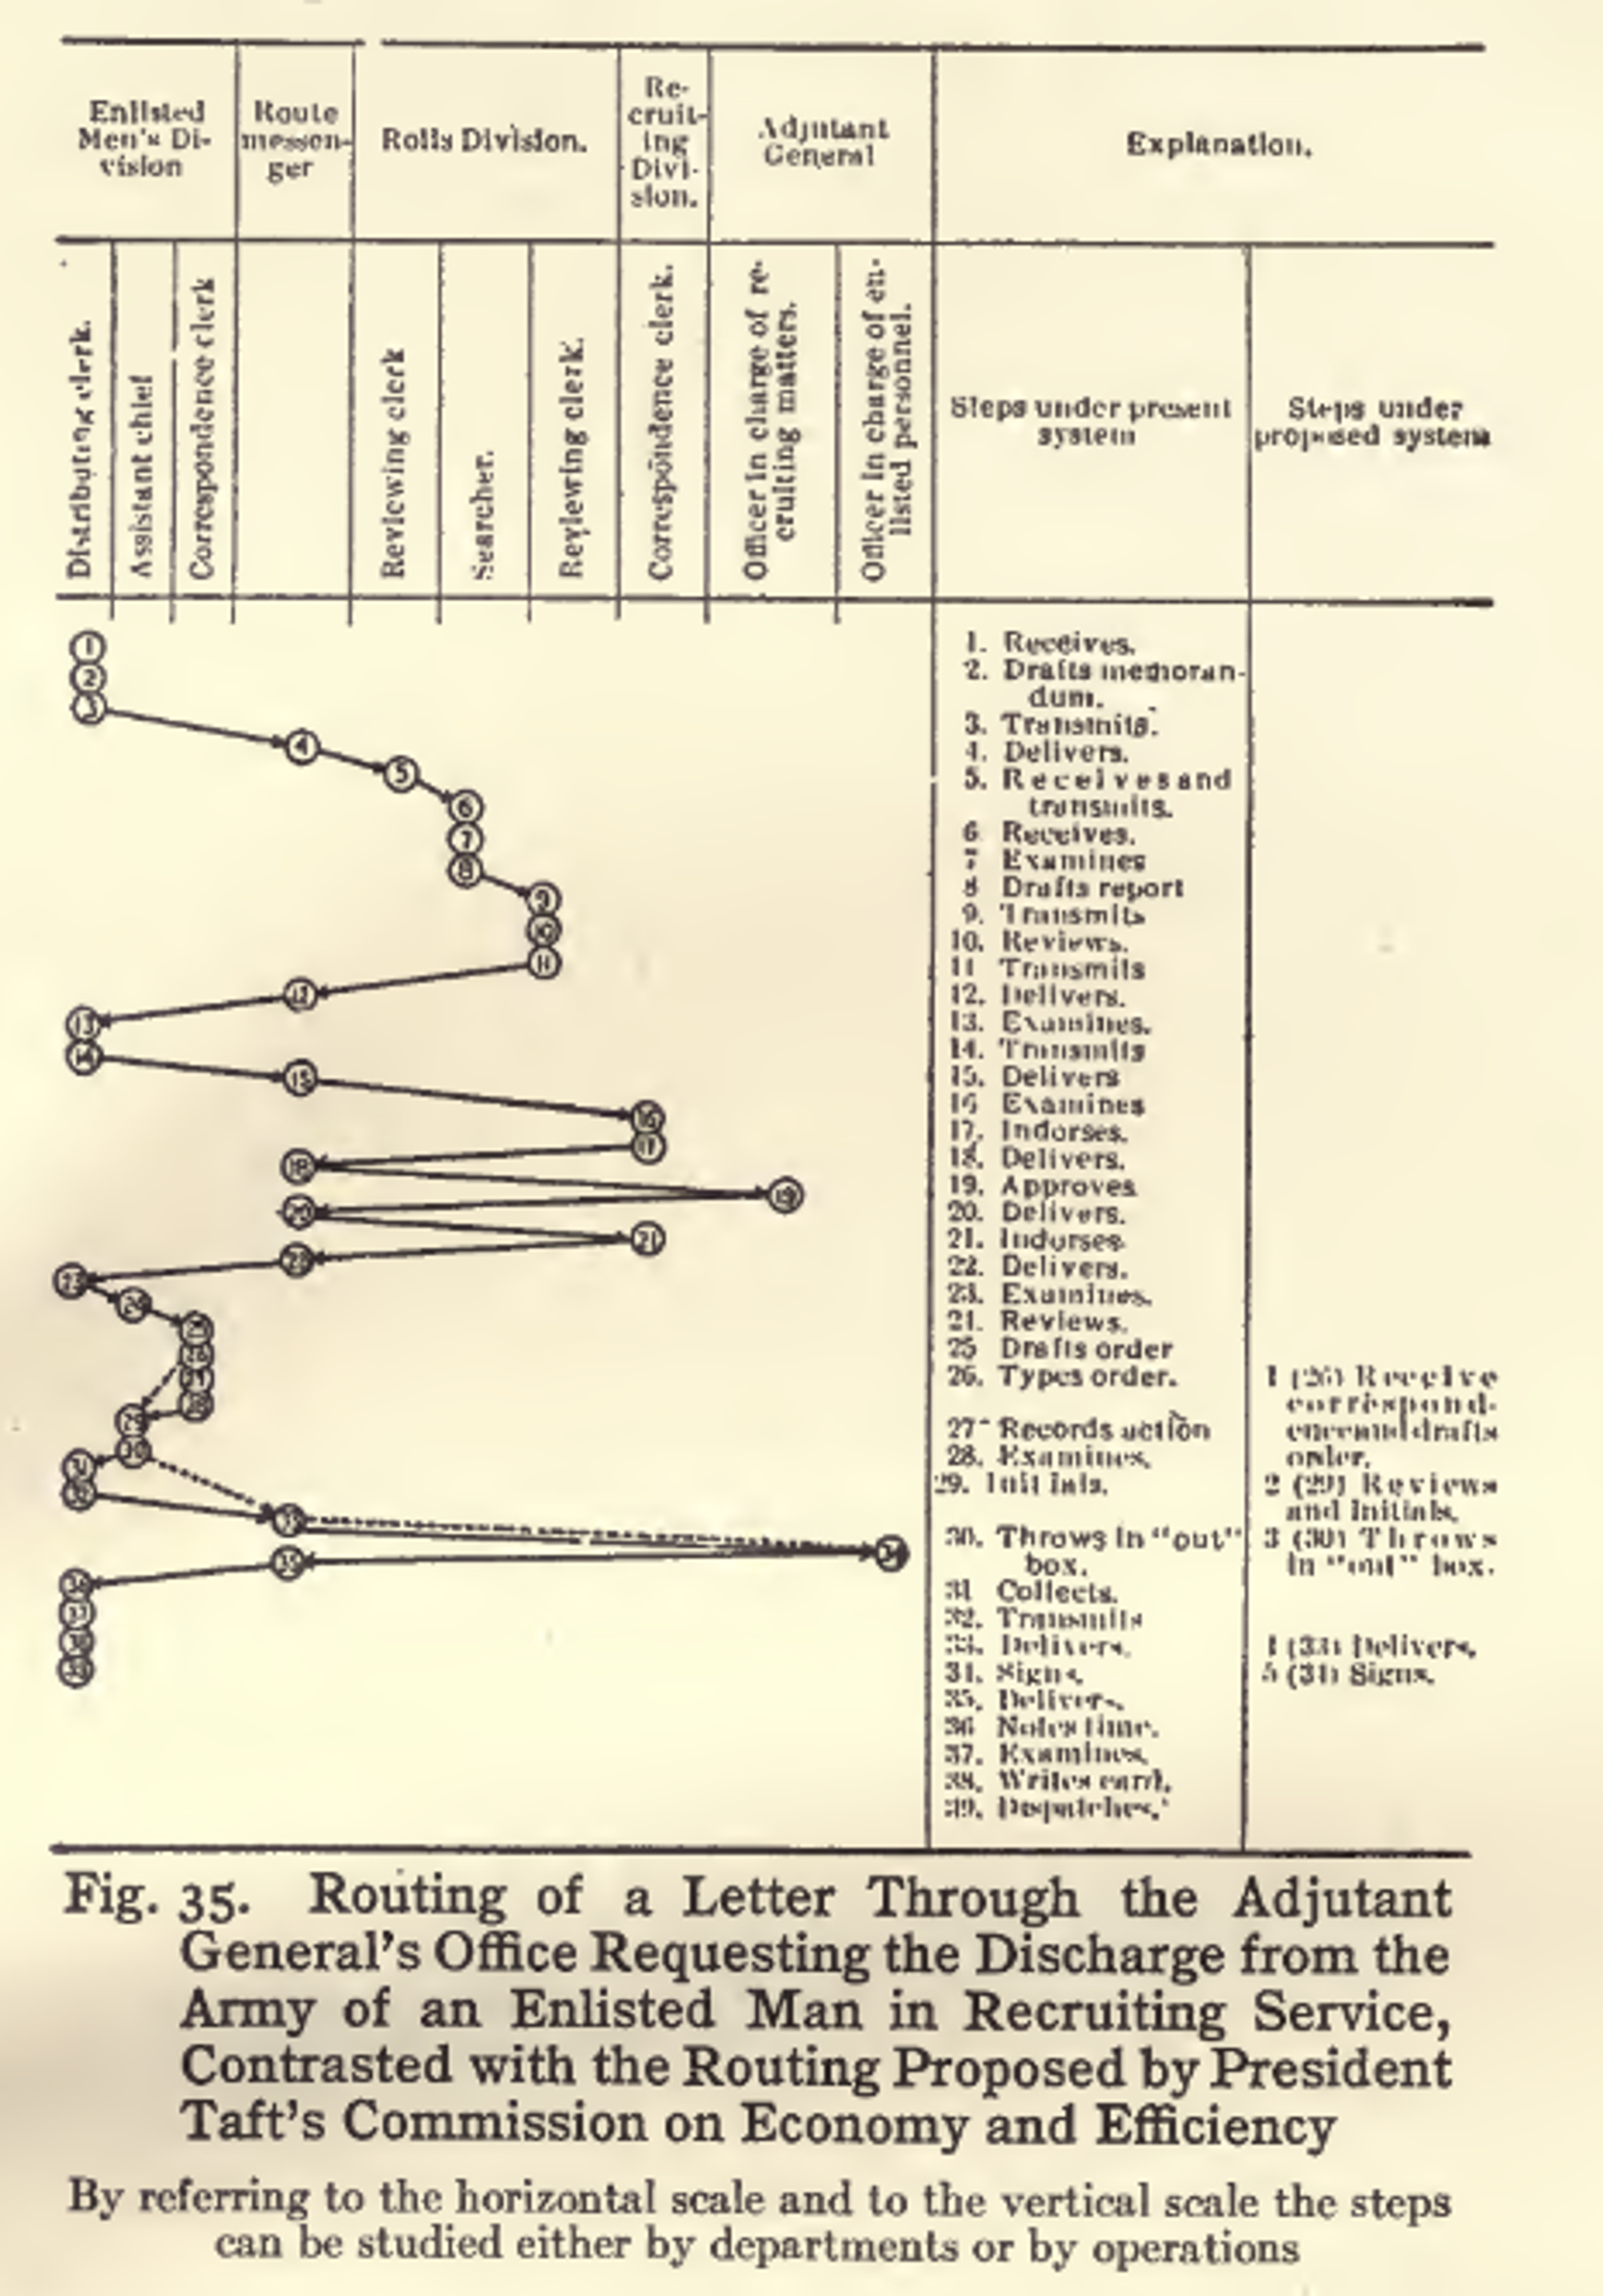 Trajet d'une lettre dans les différents services de l'armée (différentes colonnes) avec explications de chaque trajet (colonnes de gauche), la lettre circulant de haut en bas par étapes. 